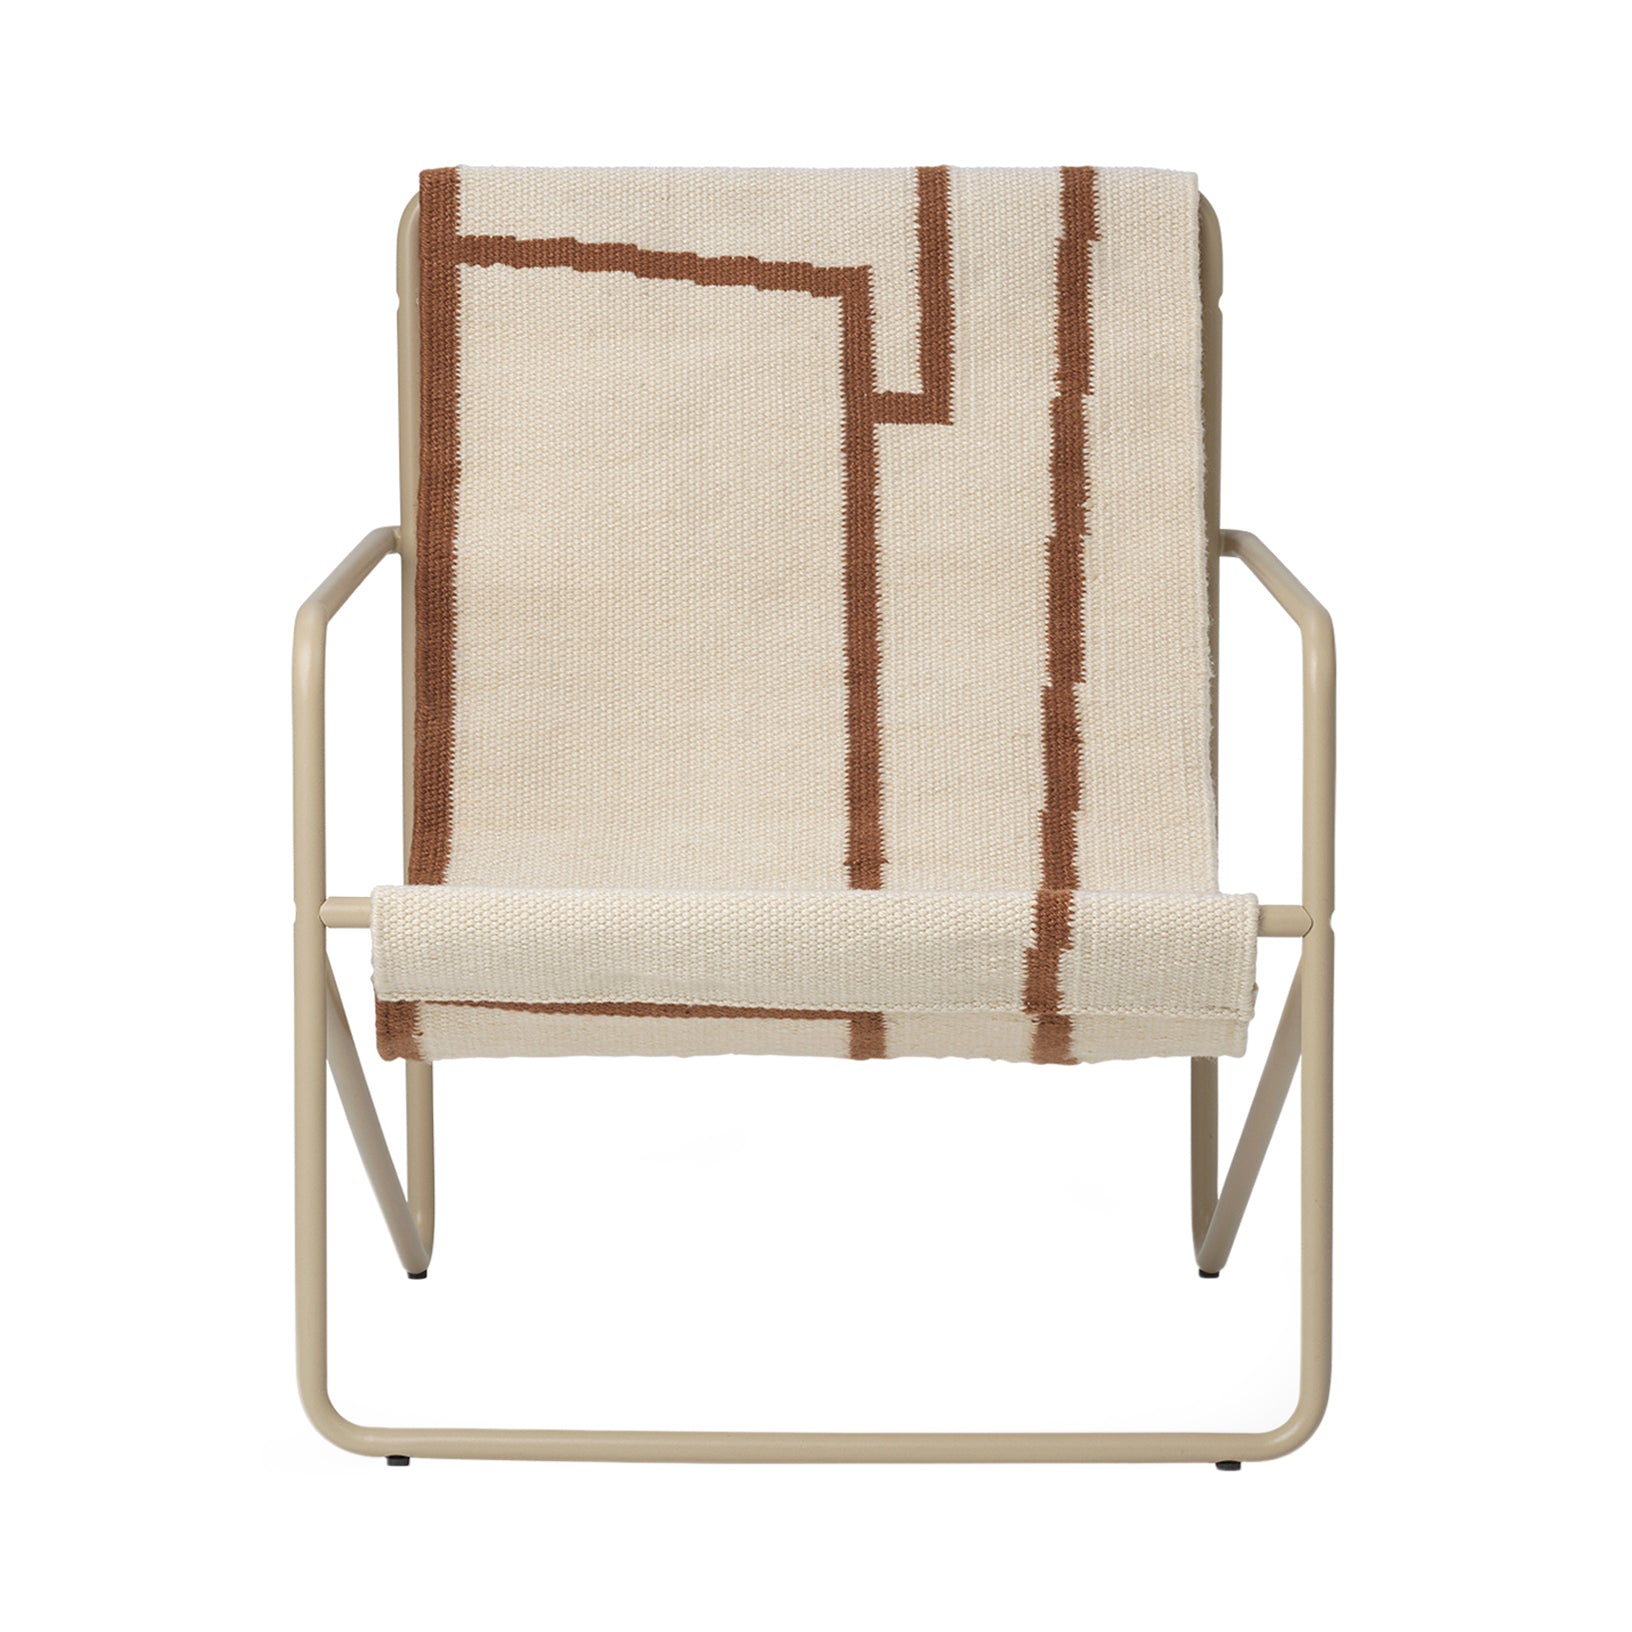 Desert Kids Chair: Shape + Cashmere